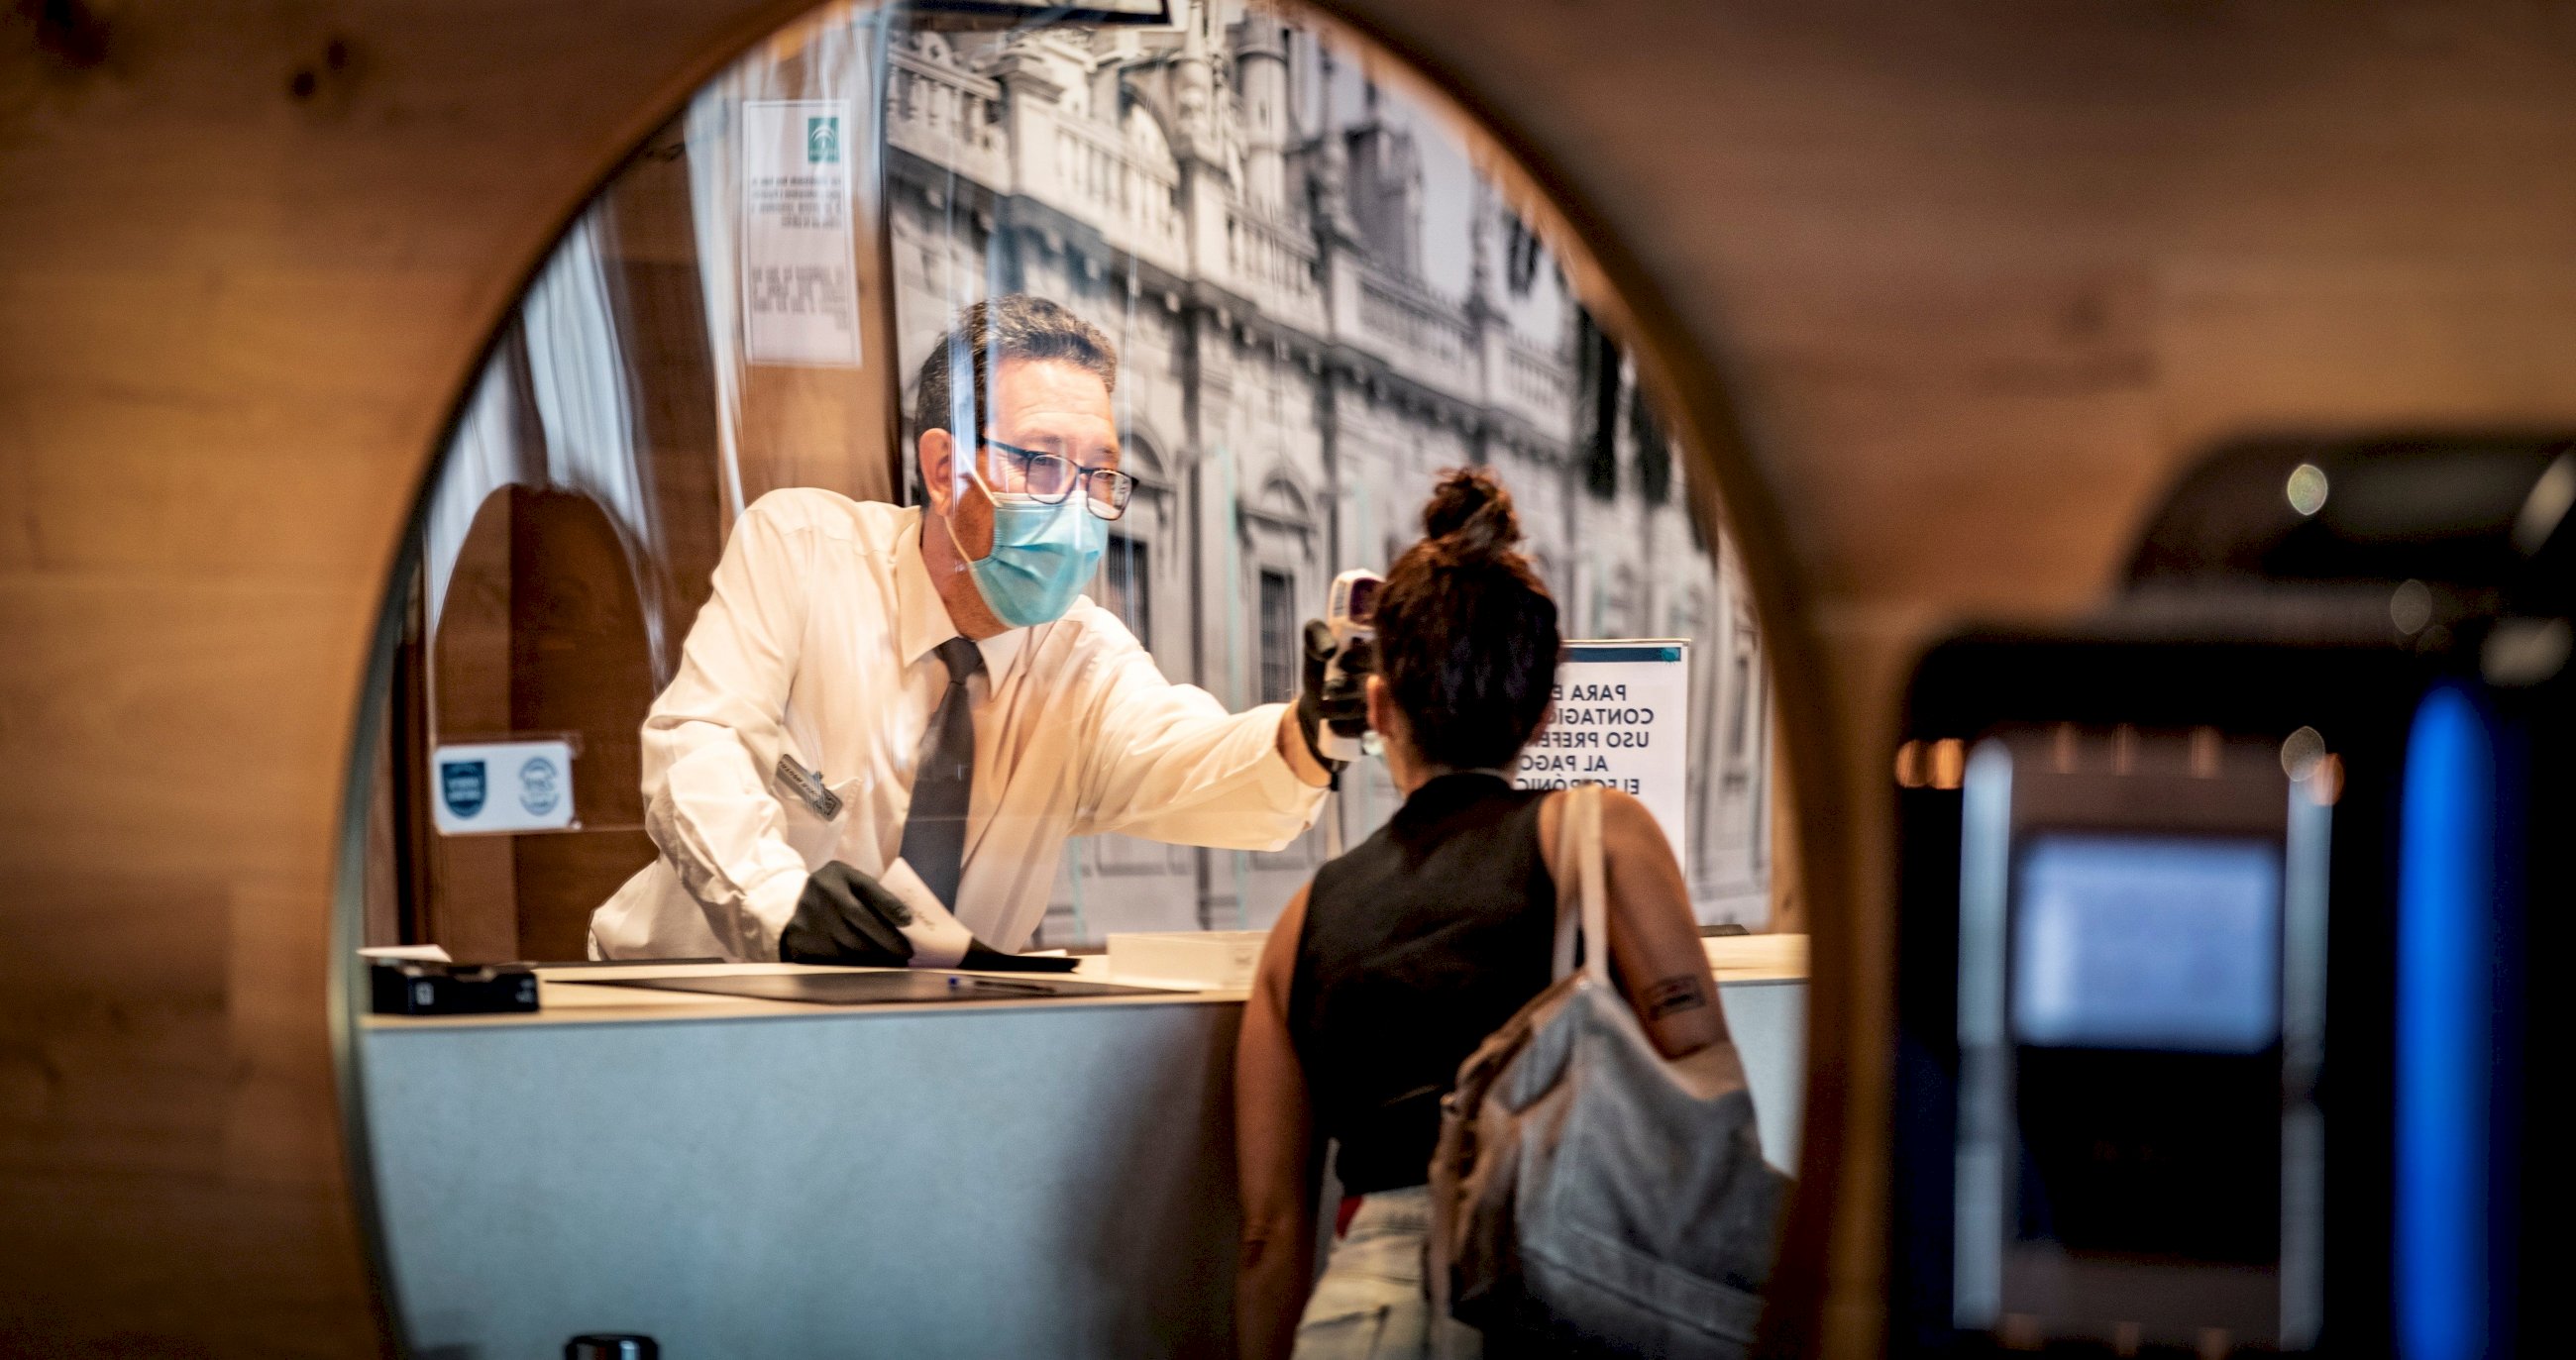 Recepción del Hotel Zenit de Sevilla donde se atiende a una clienta con las medidas de seguridad, mascarillas, gel desinfectante... por la pandemia de coronavirus. Foto: Efe/ José Manuel Vidal